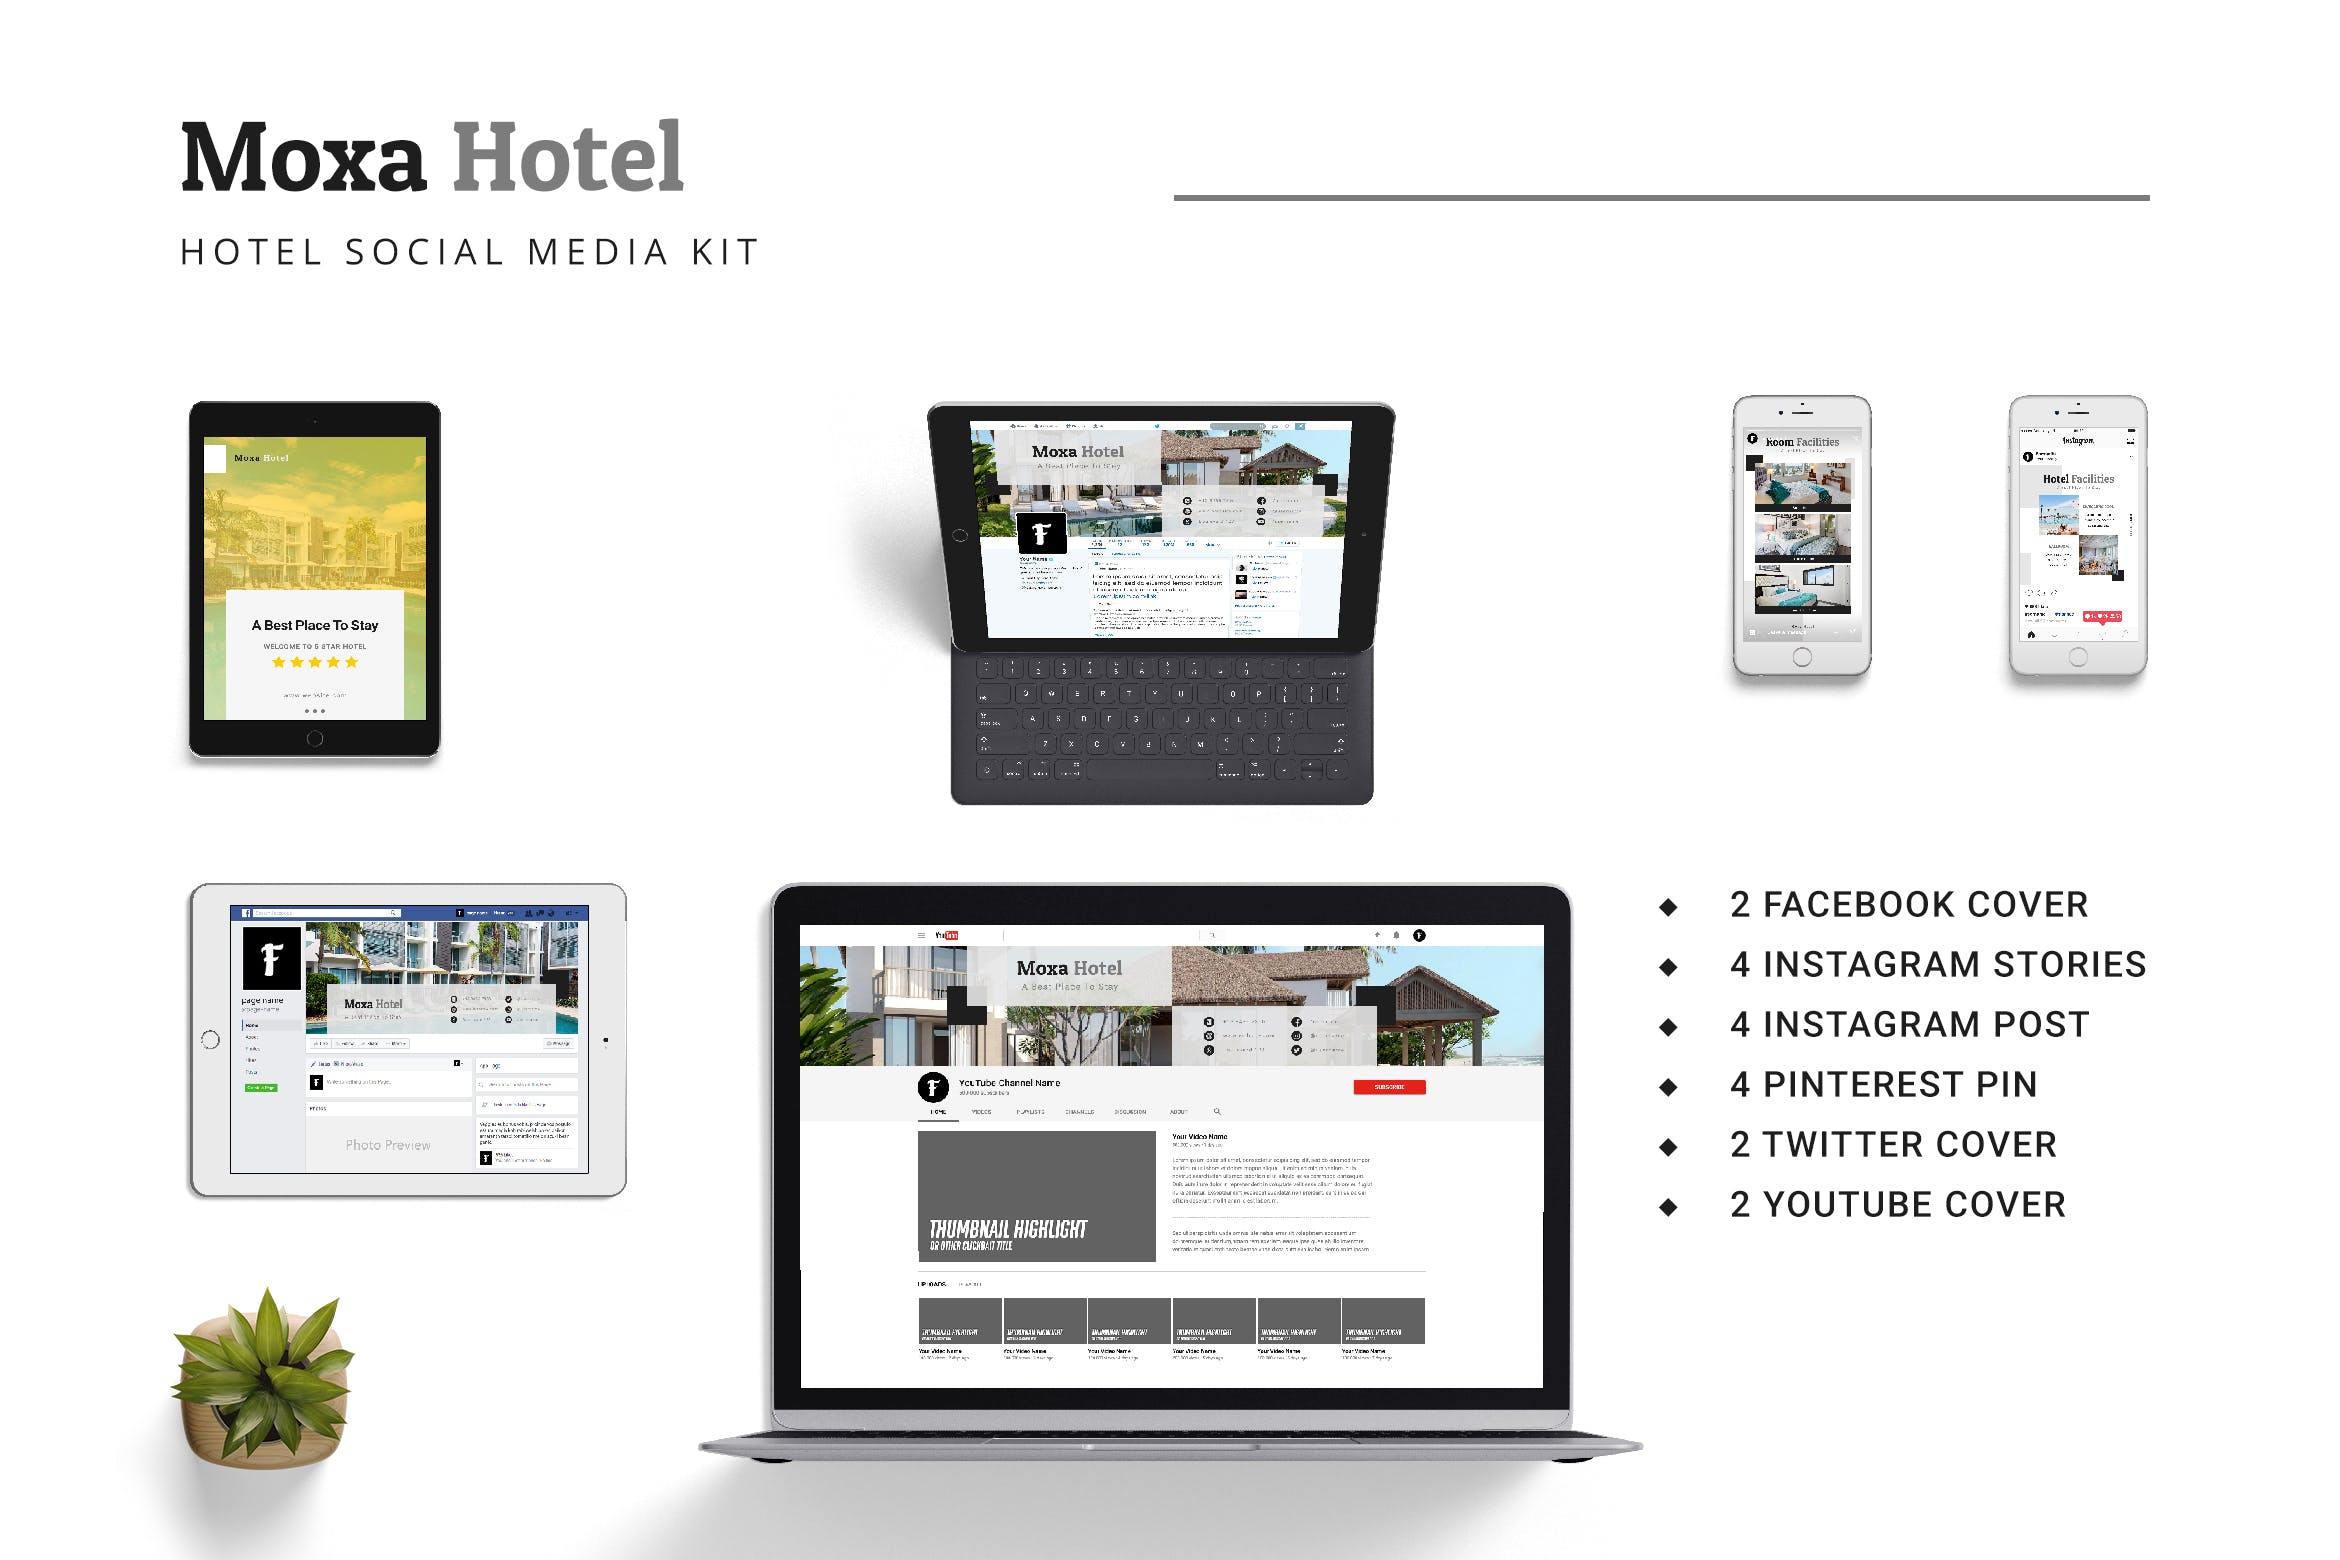 酒店品牌社交媒体平台推广设计素材包 Moxa Hotel Social Media Kit插图